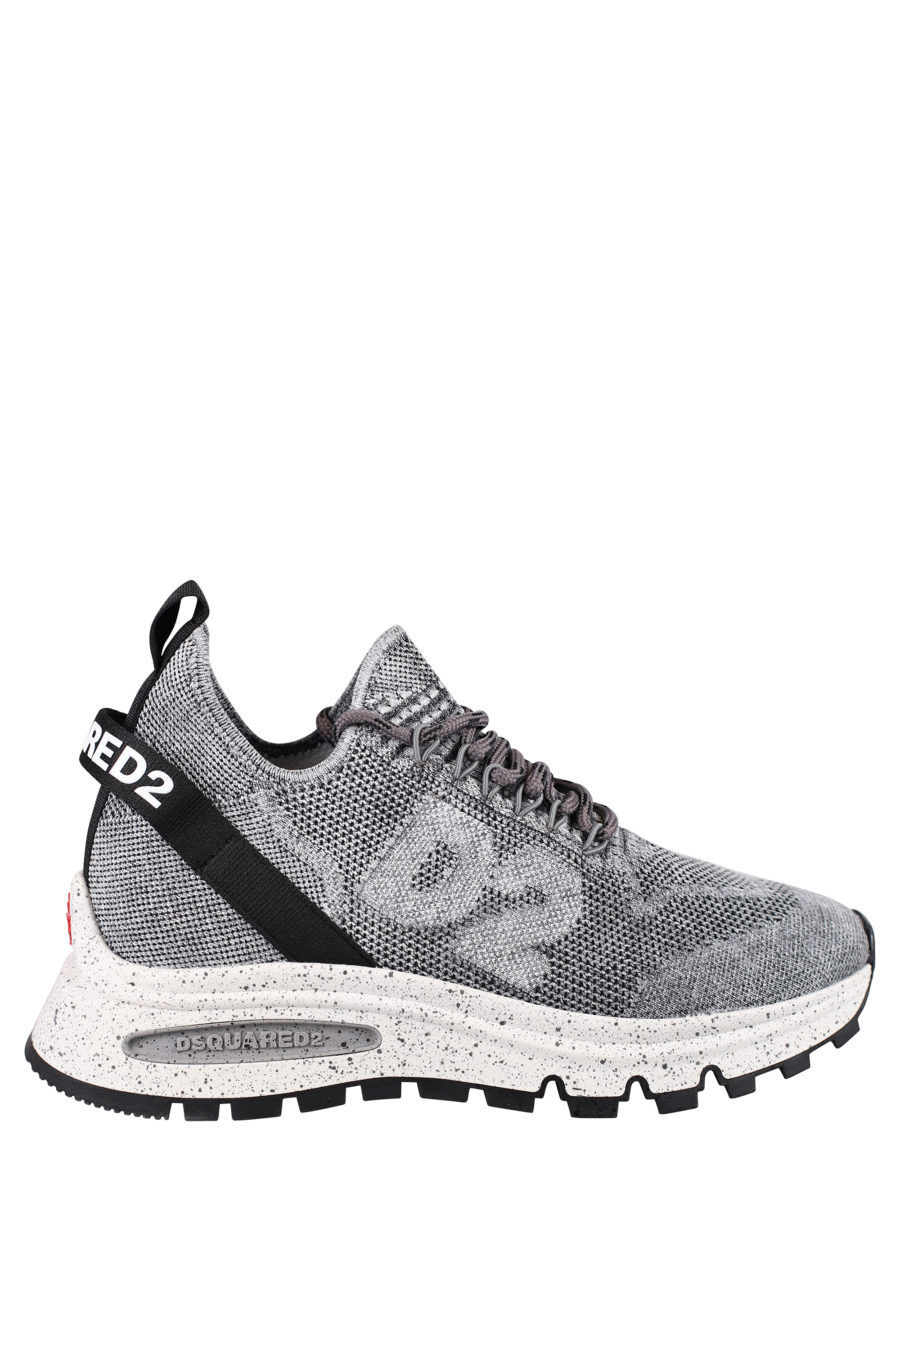 Zapatillas grises con logo pequeño blanco y "D2" - IMG 0711